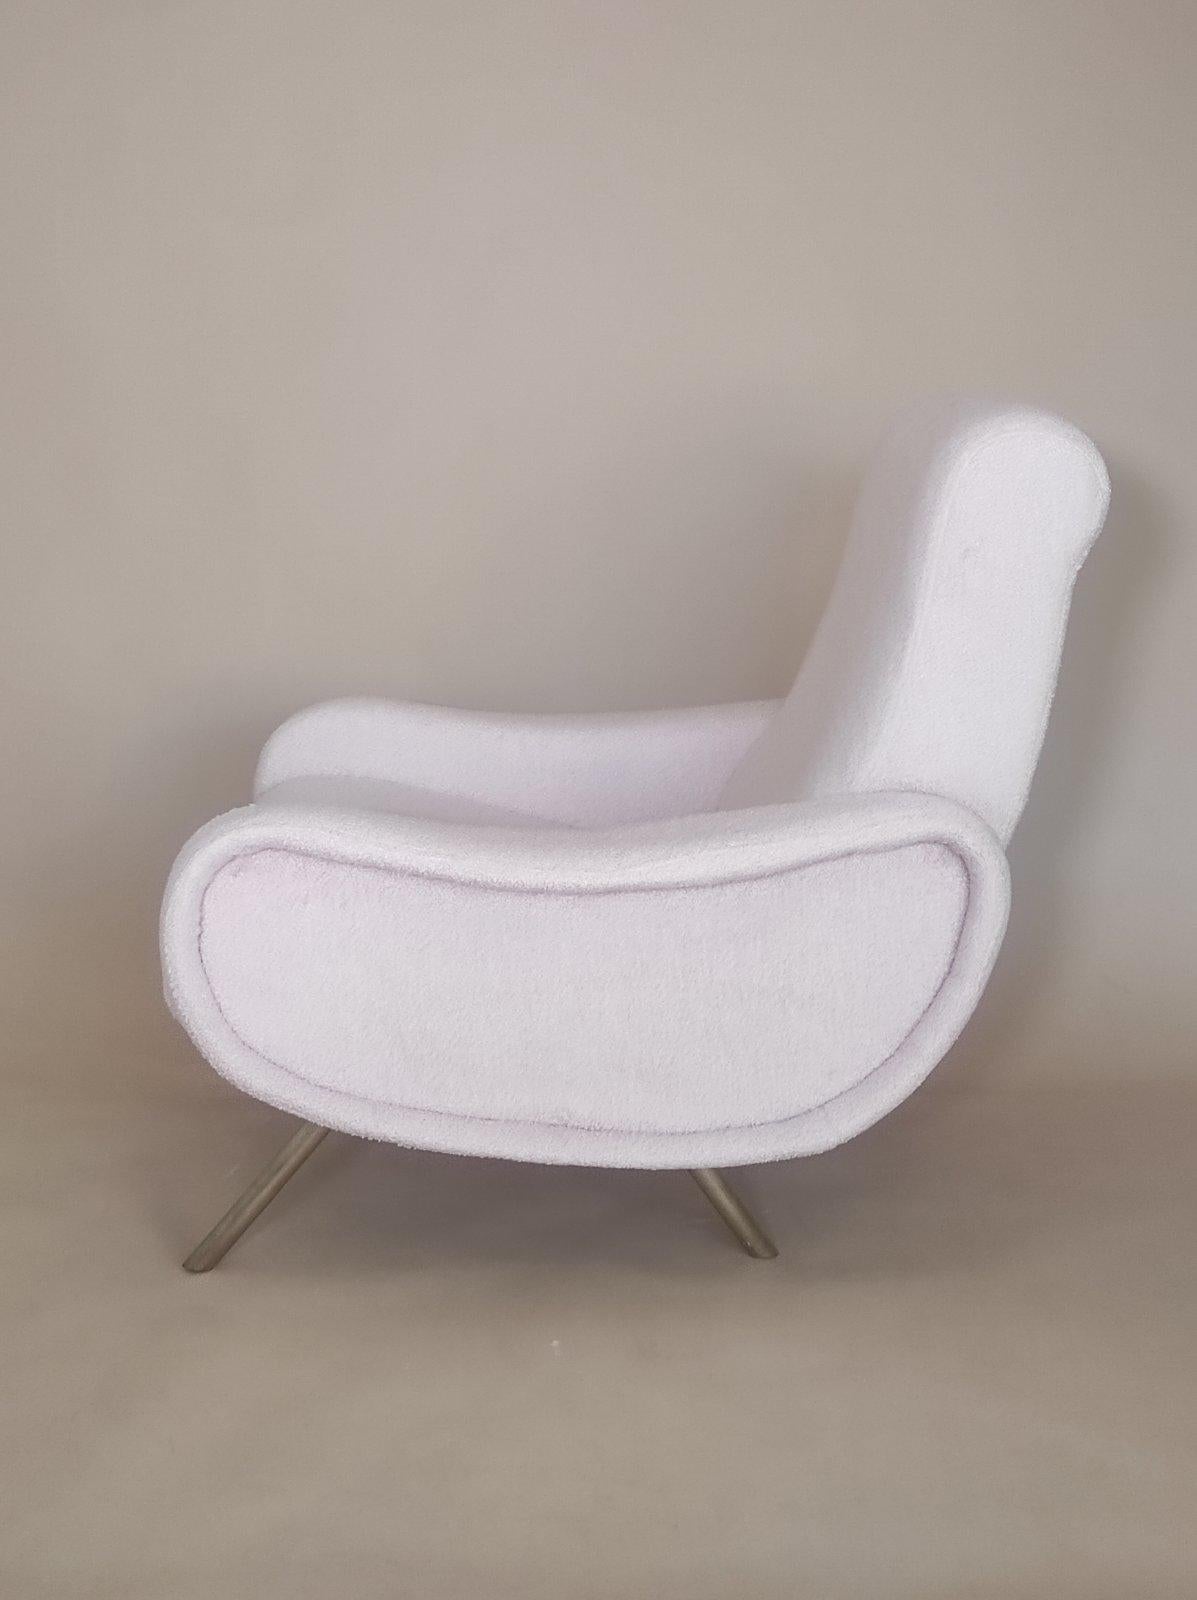 Marco Zanuso Lady Chair for Arflex 1059s